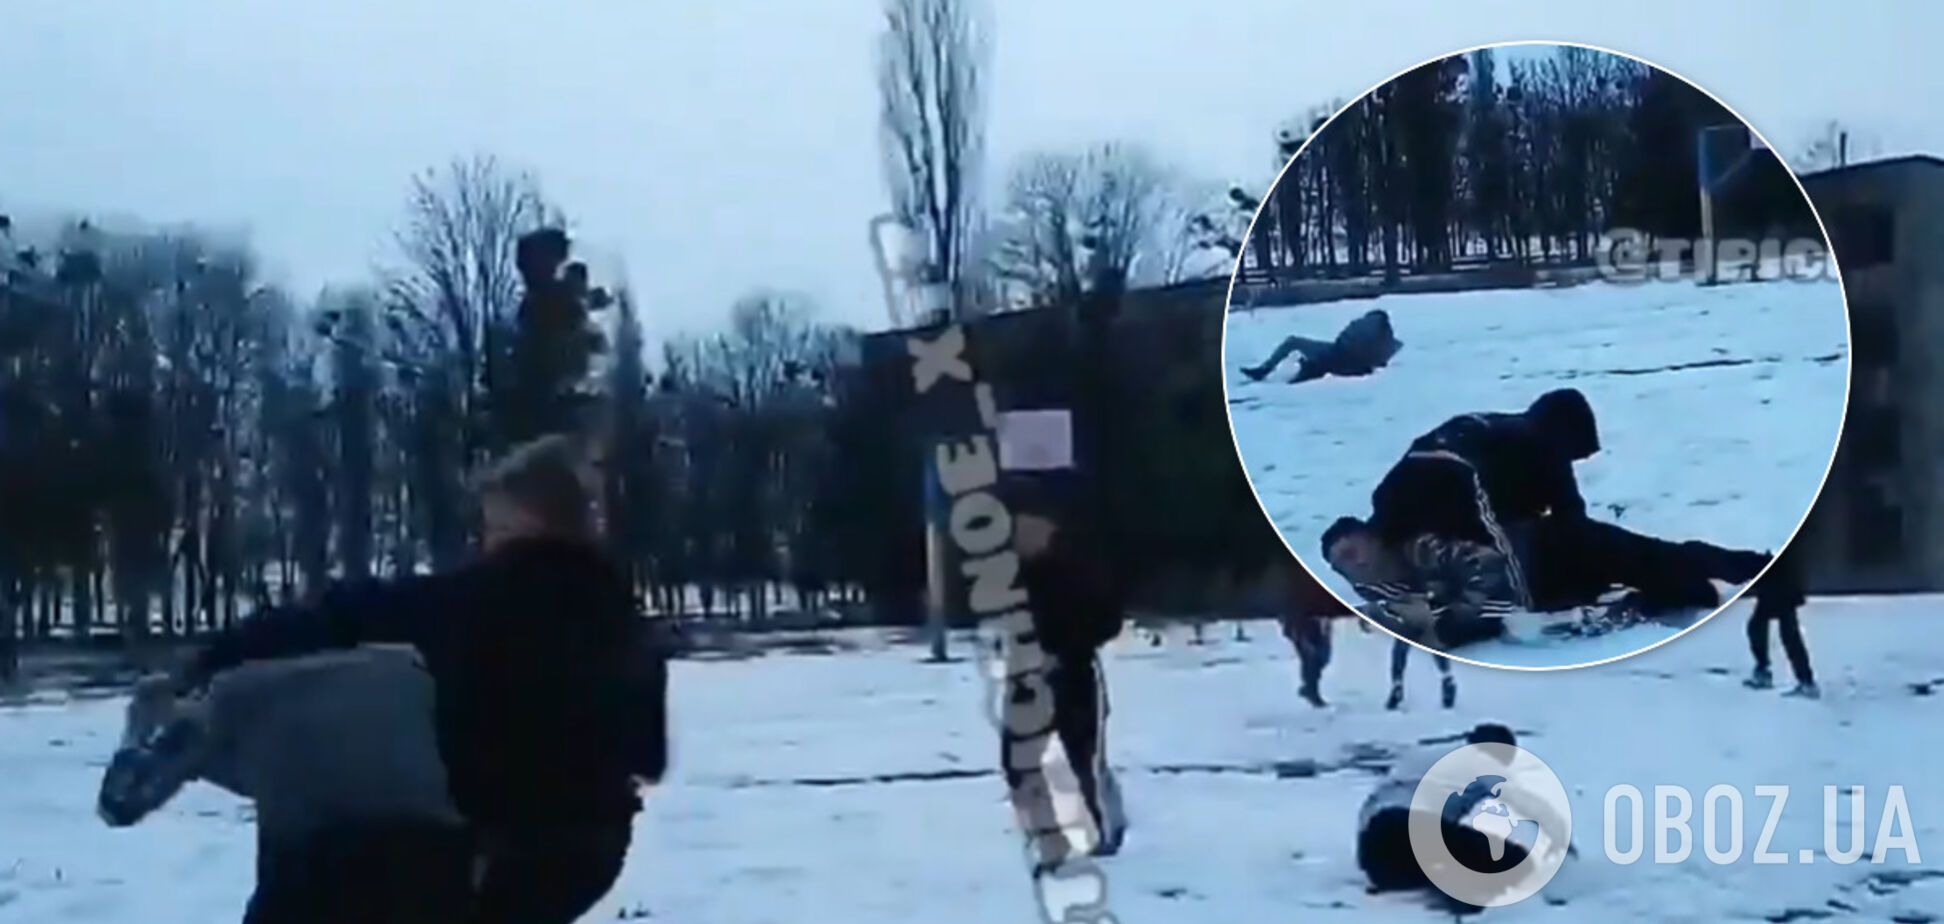 В Харькове школьники устроили массовую драку. Видео попало в сеть